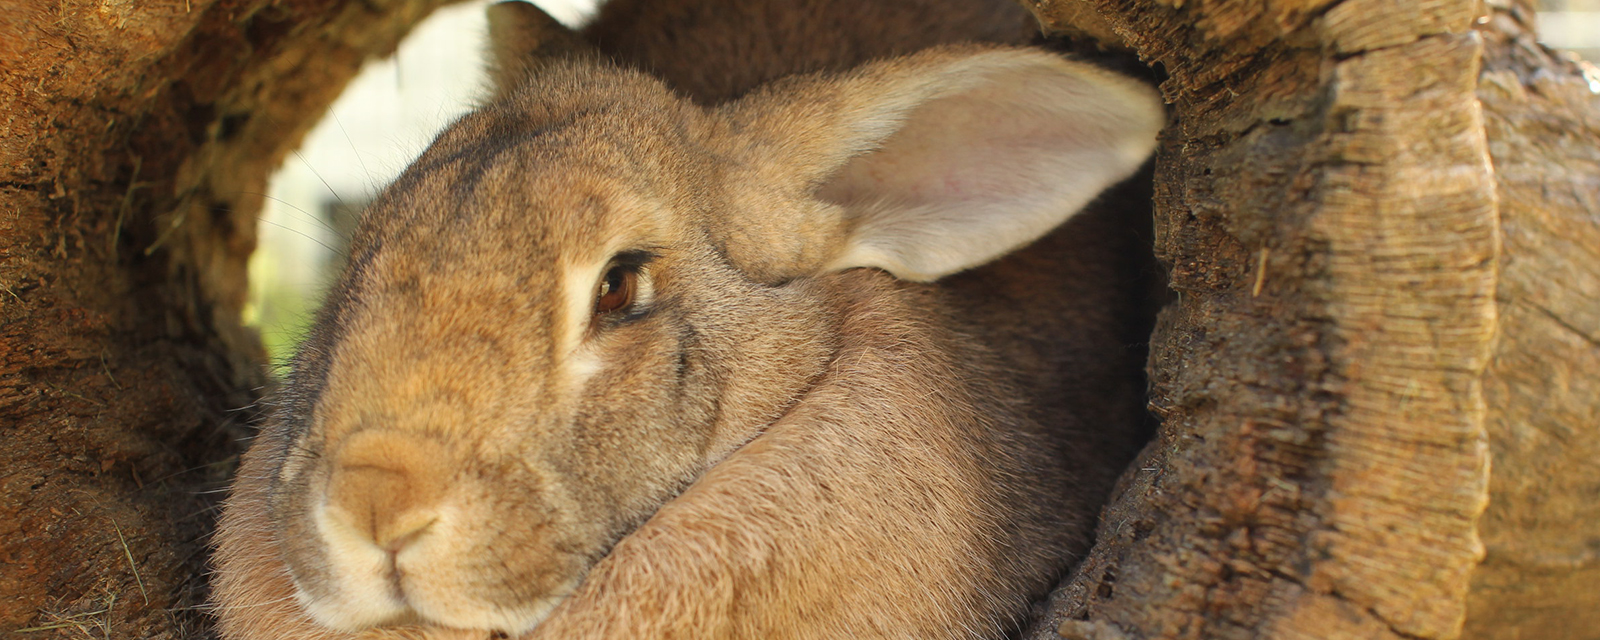 Domestic Rabbit - Lincoln Park Zoo